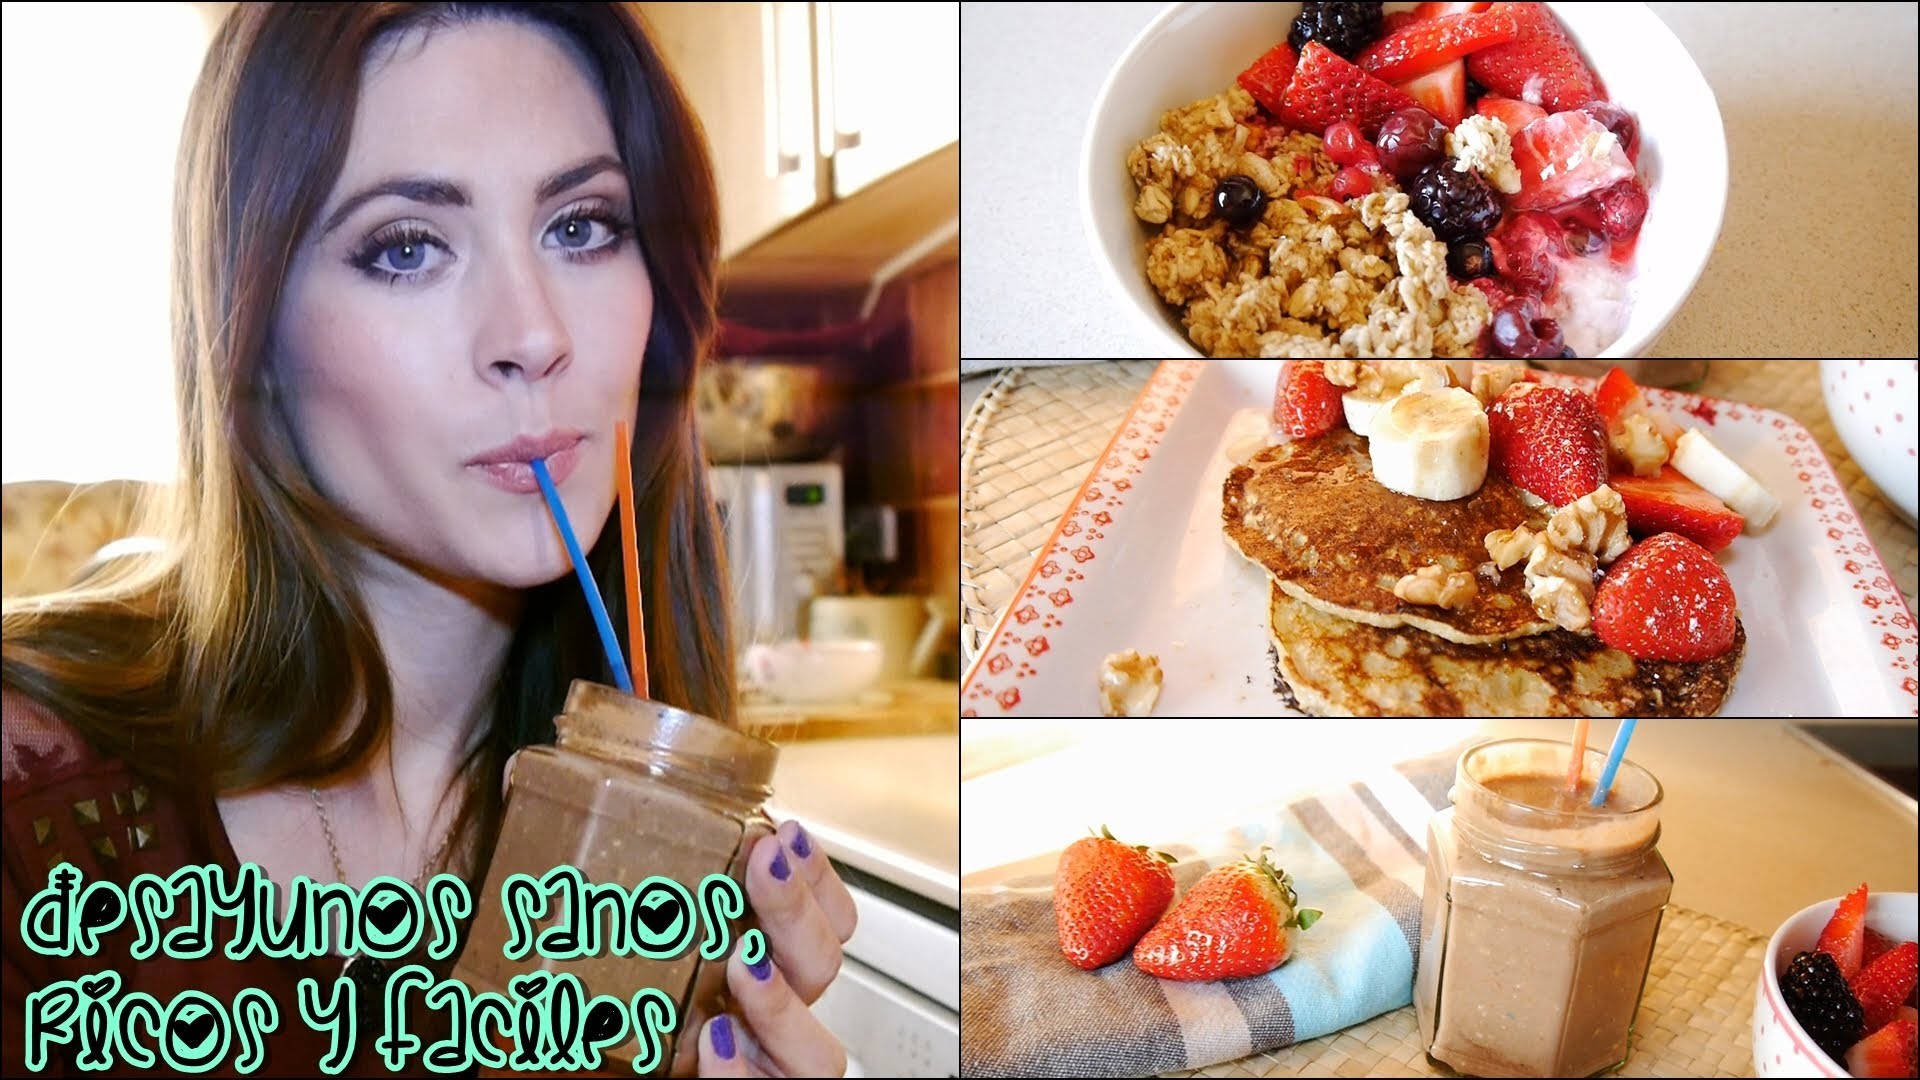 3 desayunos rápidos, deliciosos y saludables! 3 fast, yummy and healthy breakfast ideas!